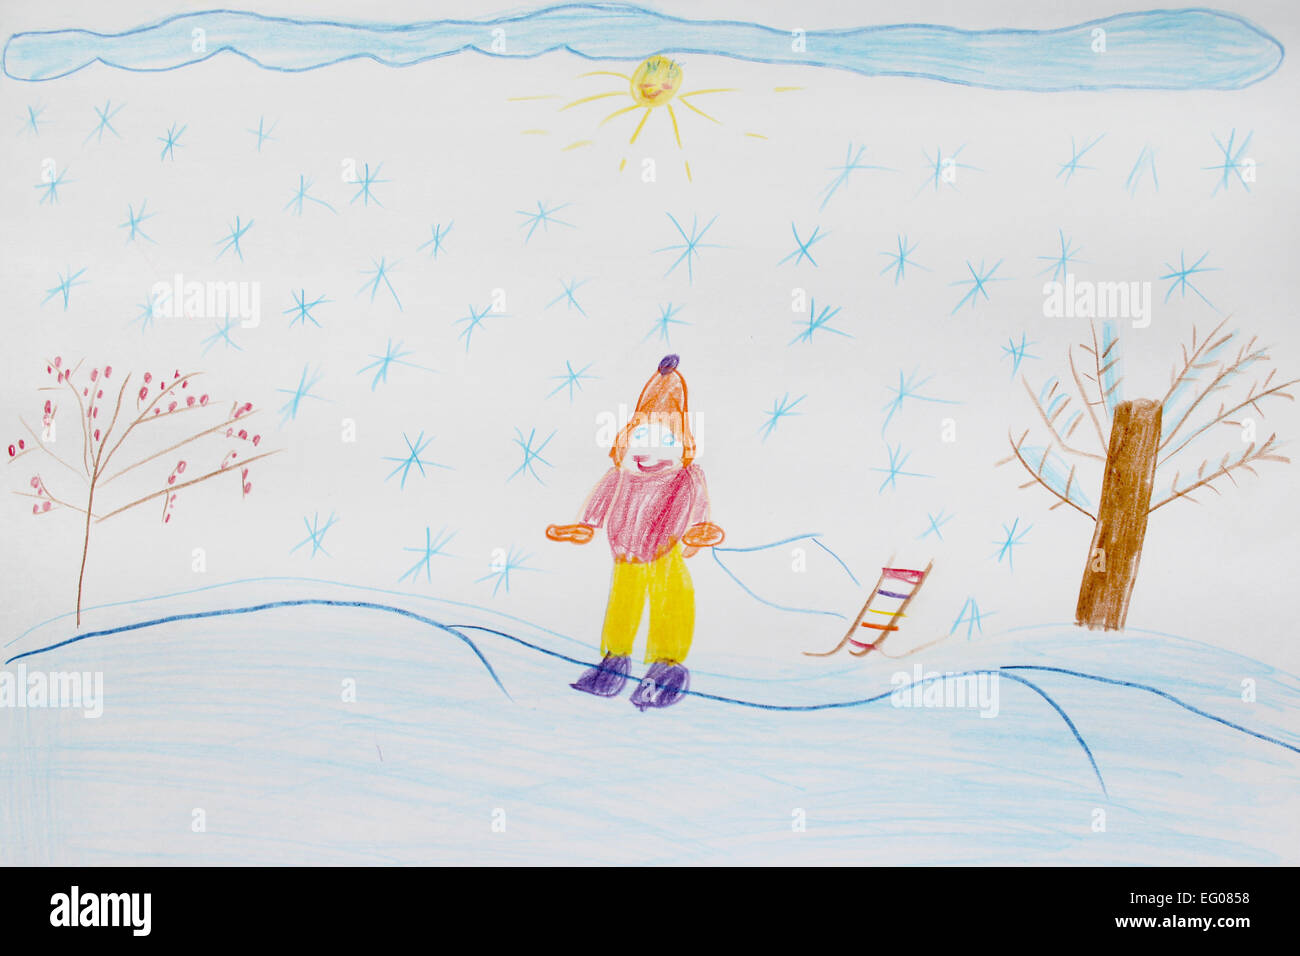 De dessins d'enfants de l'image de l'article sur les pistes de ski Banque D'Images